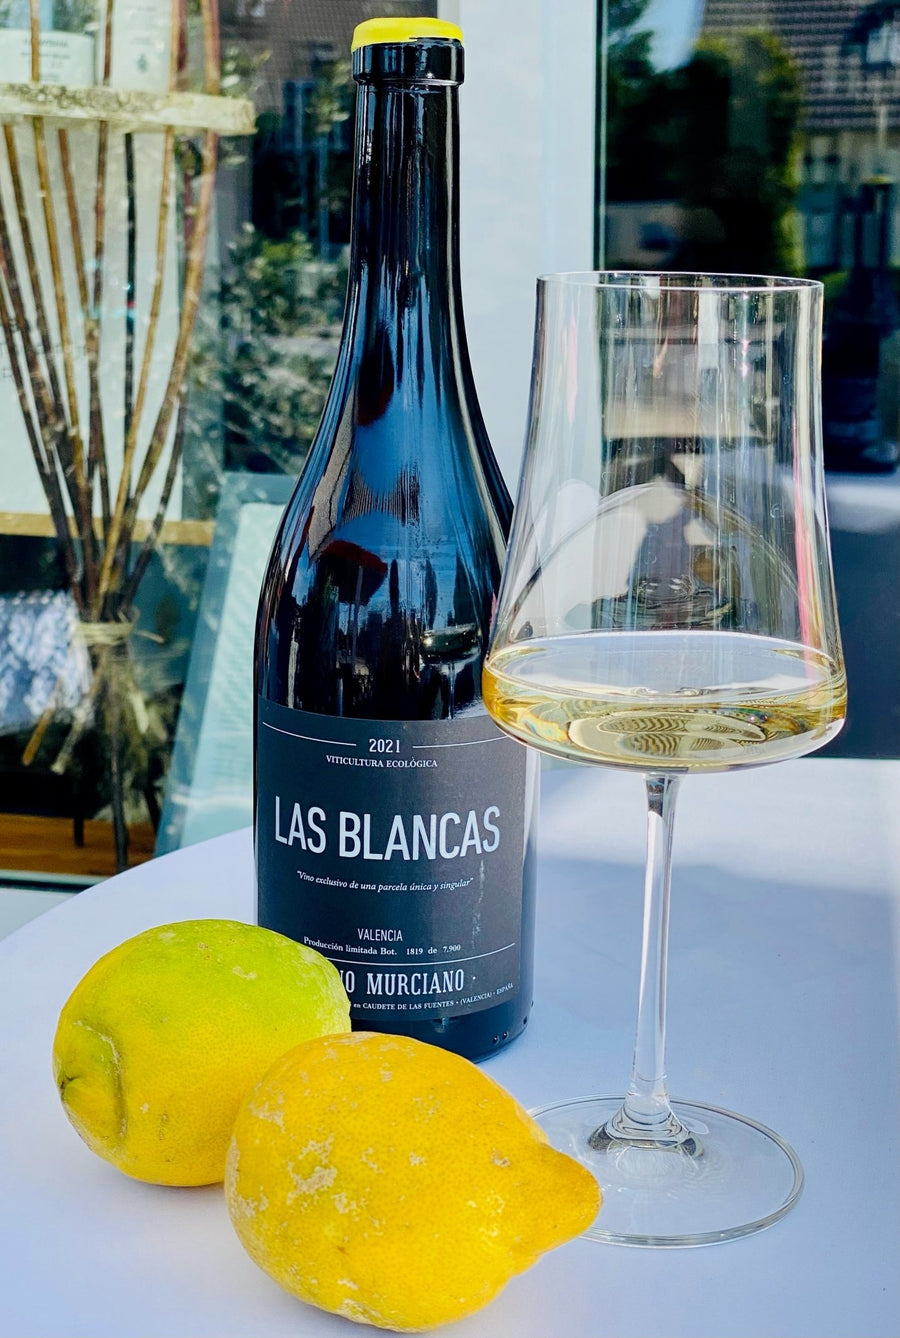 Bruno Marciano, "Las Blancas", 2021 - Weinwunder